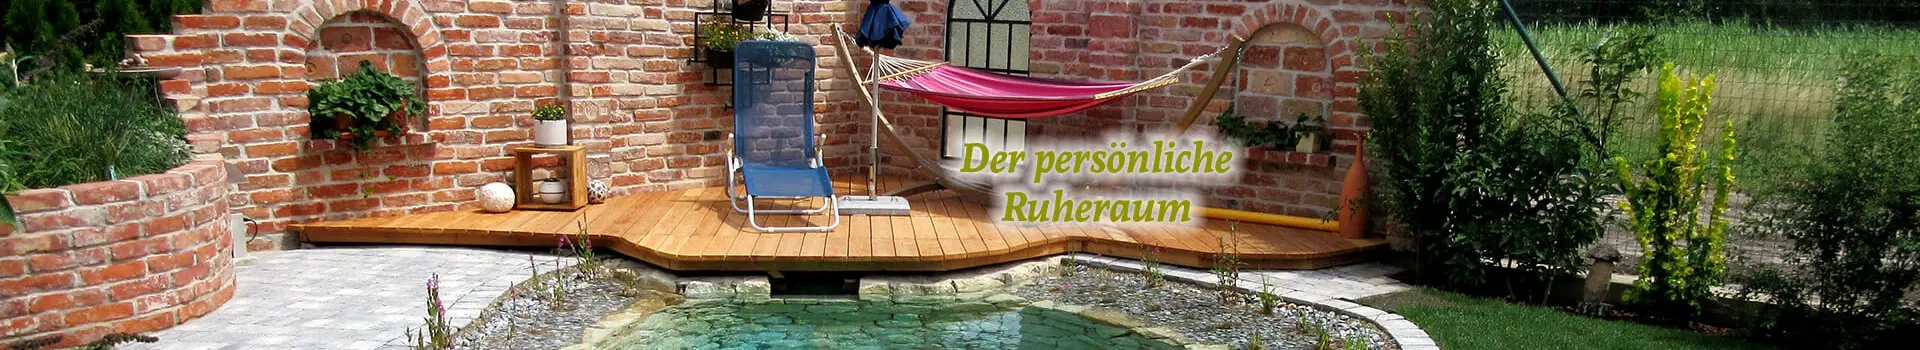 Kleiner Schwimmteich und Sitzecke mit Mauer aus Ziegelsteinen in Niederösterreich.